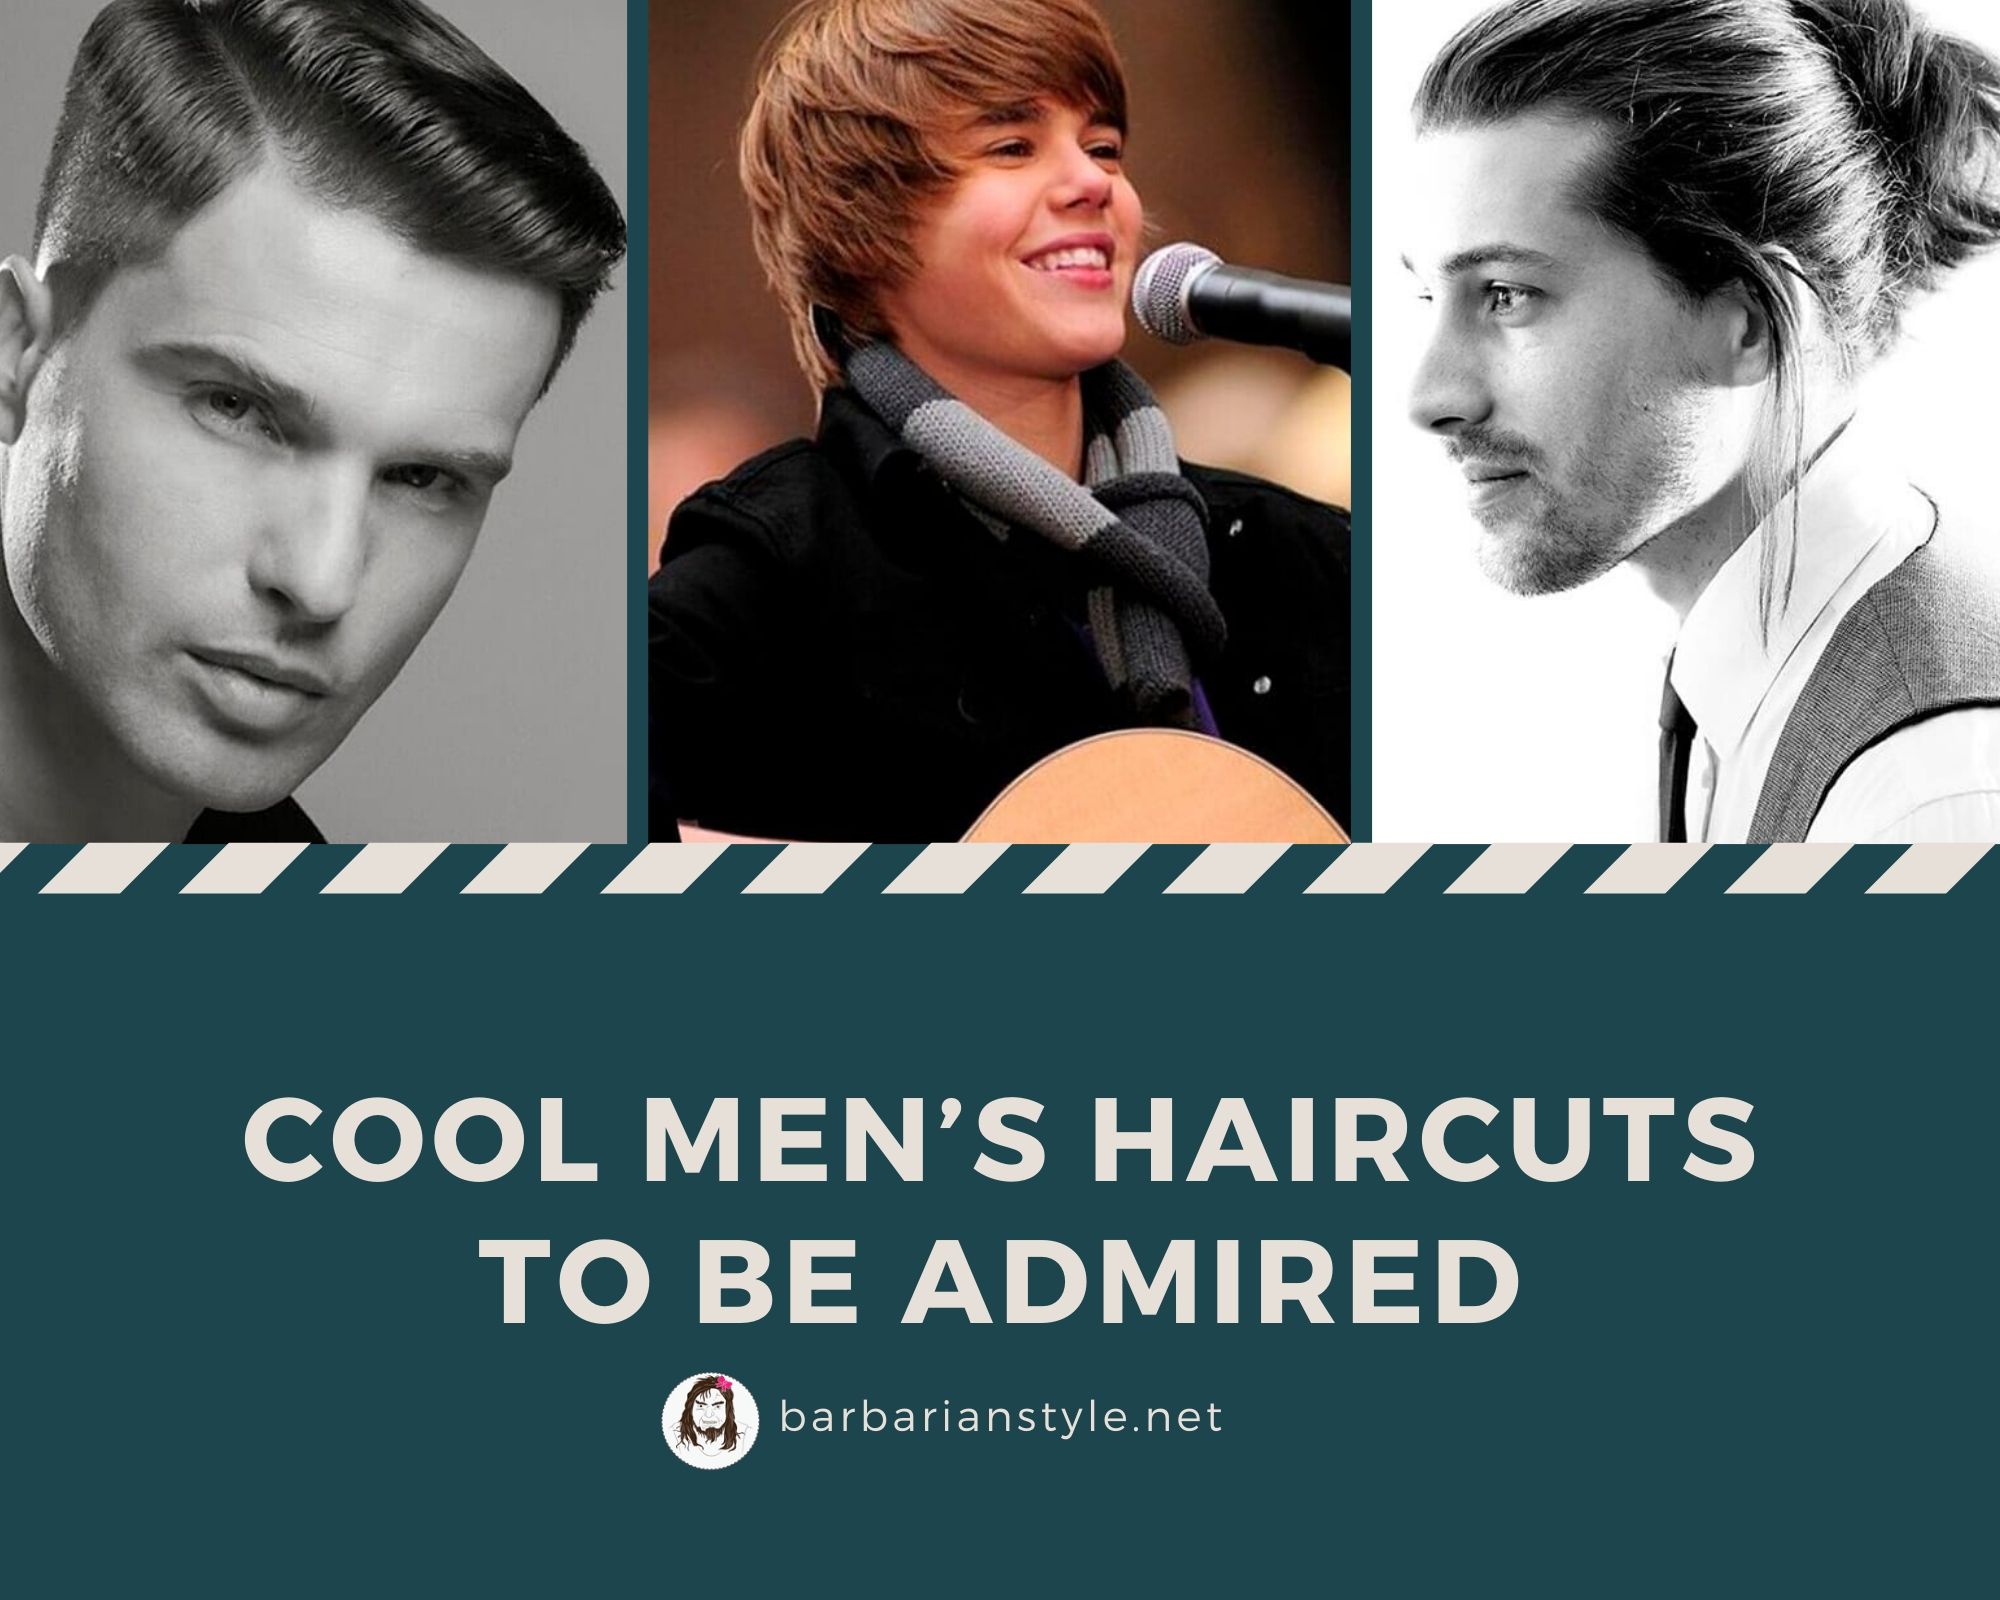 Cool Haircut for little Boys | Kids hair cuts, Boy hairstyles, Boys haircuts